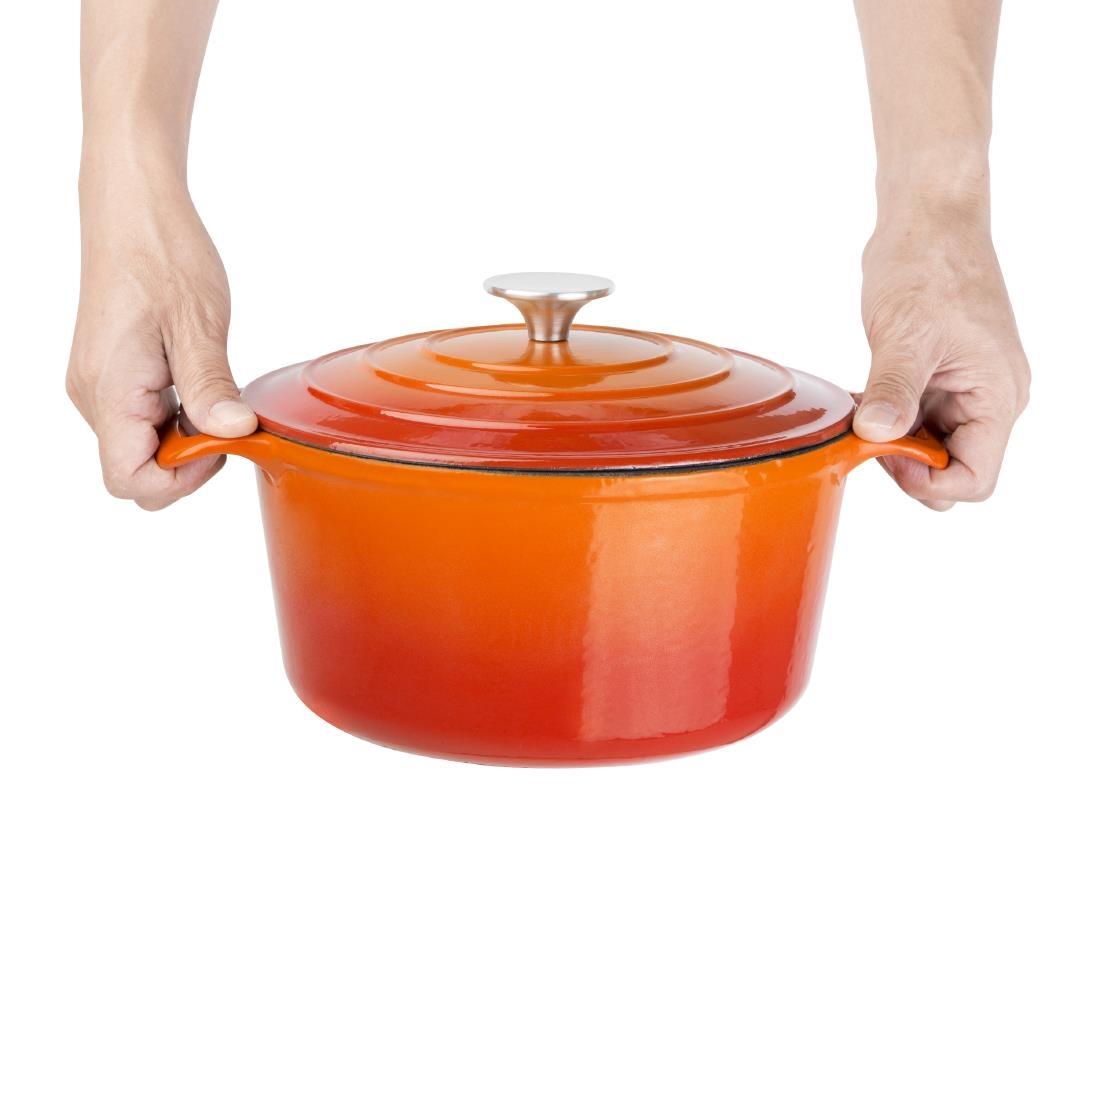 Vogue Orange Round Casserole Dish 4Ltr - GH303  - 5